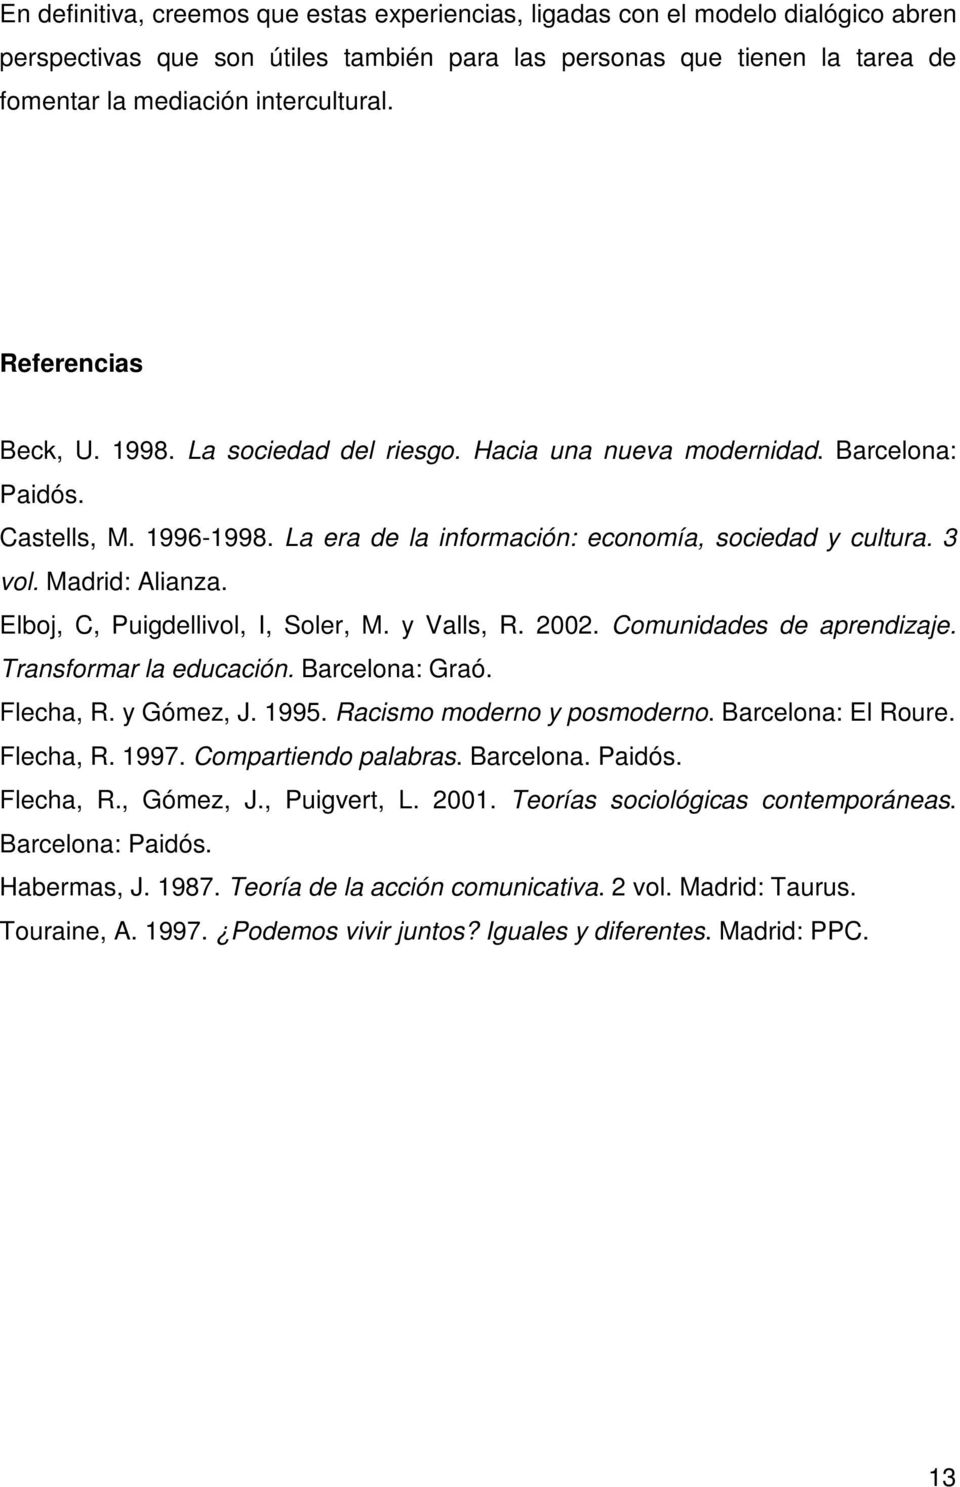 Madrid: Alianza. Elboj, C, Puigdellivol, I, Soler, M. y Valls, R. 2002. Comunidades de aprendizaje. Transformar la educación. Barcelona: Graó. Flecha, R. y Gómez, J. 1995.